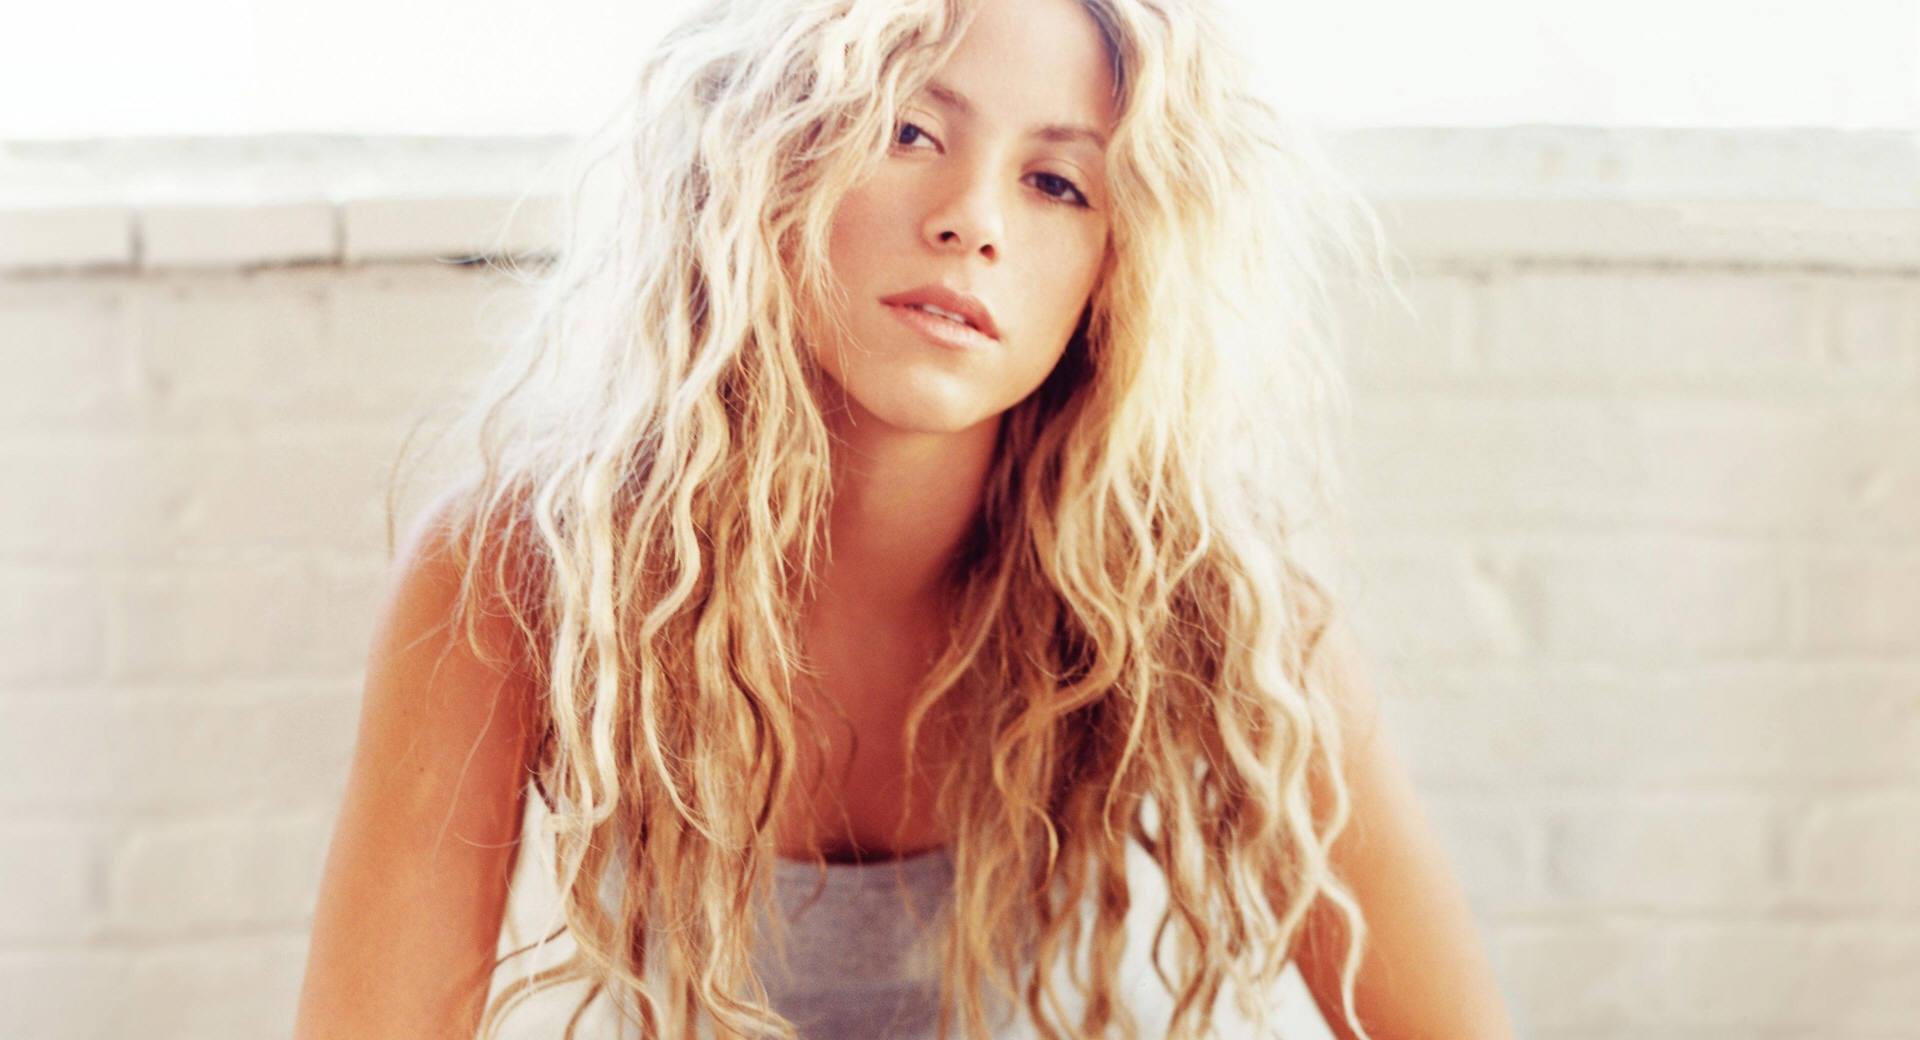 Shakira Mebarak at 1280 x 960 size wallpapers HD quality